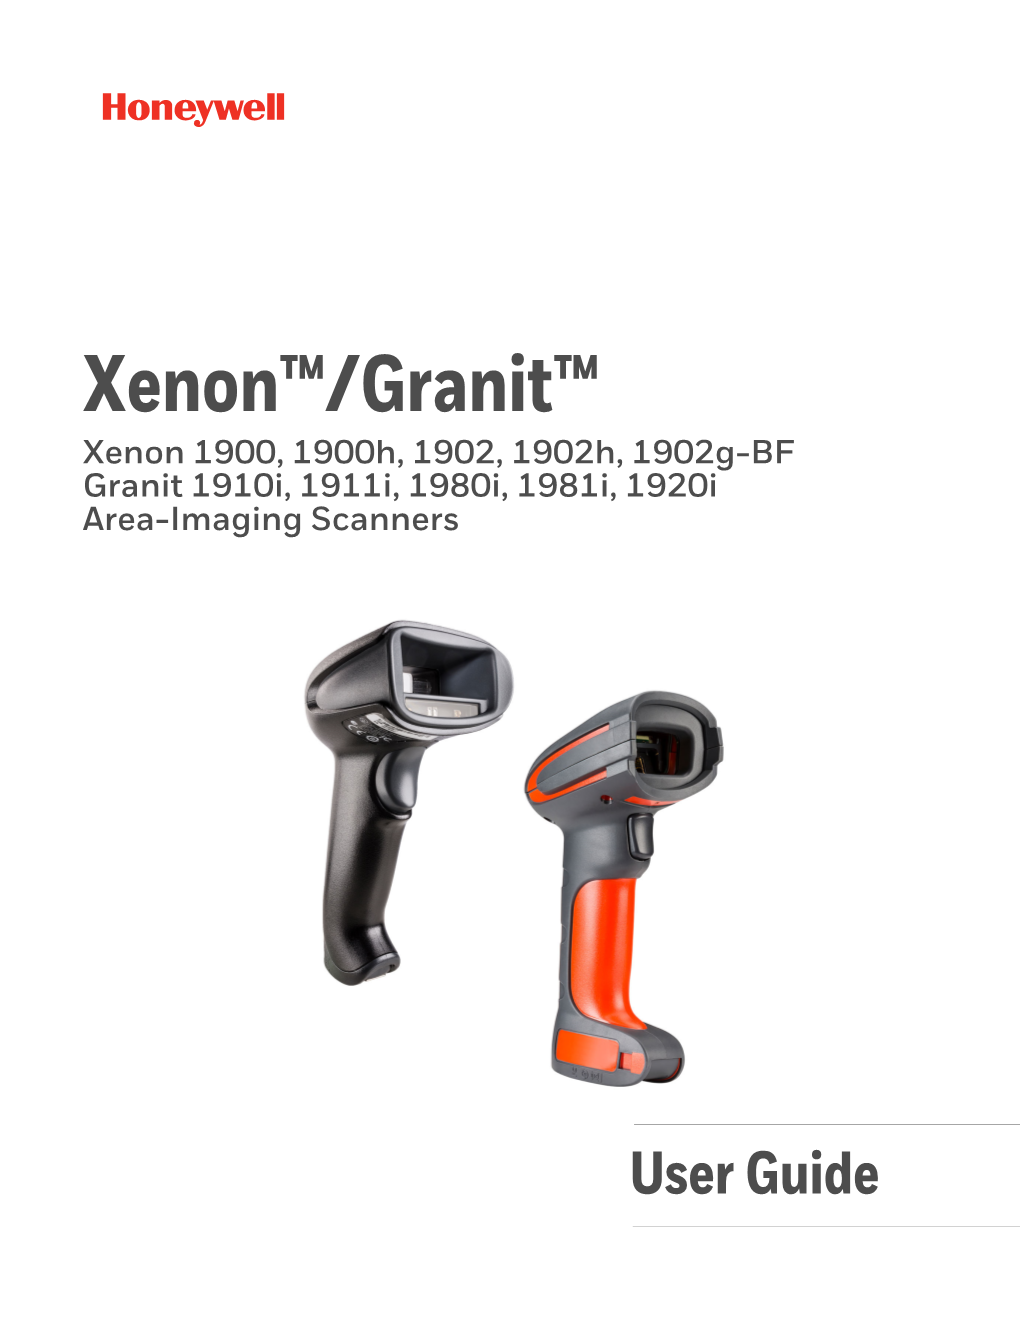 Xenon 1900, 1900H, 1902, 1902H, 1902G-BF and Granit 1910I, 1911I